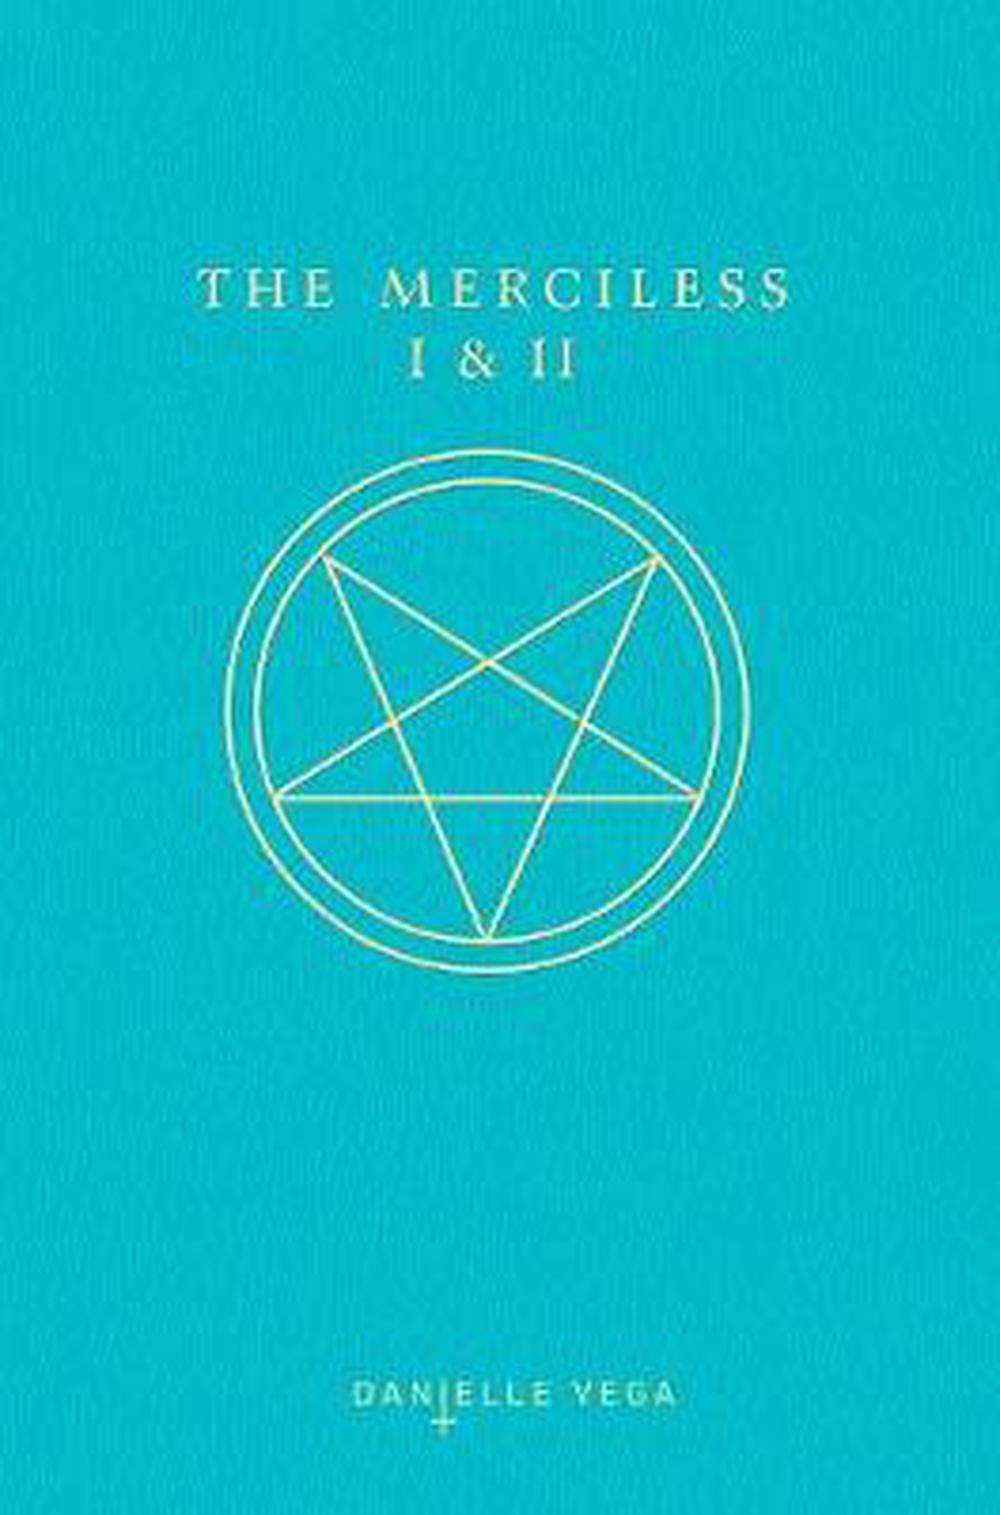 the merciless by danielle vega